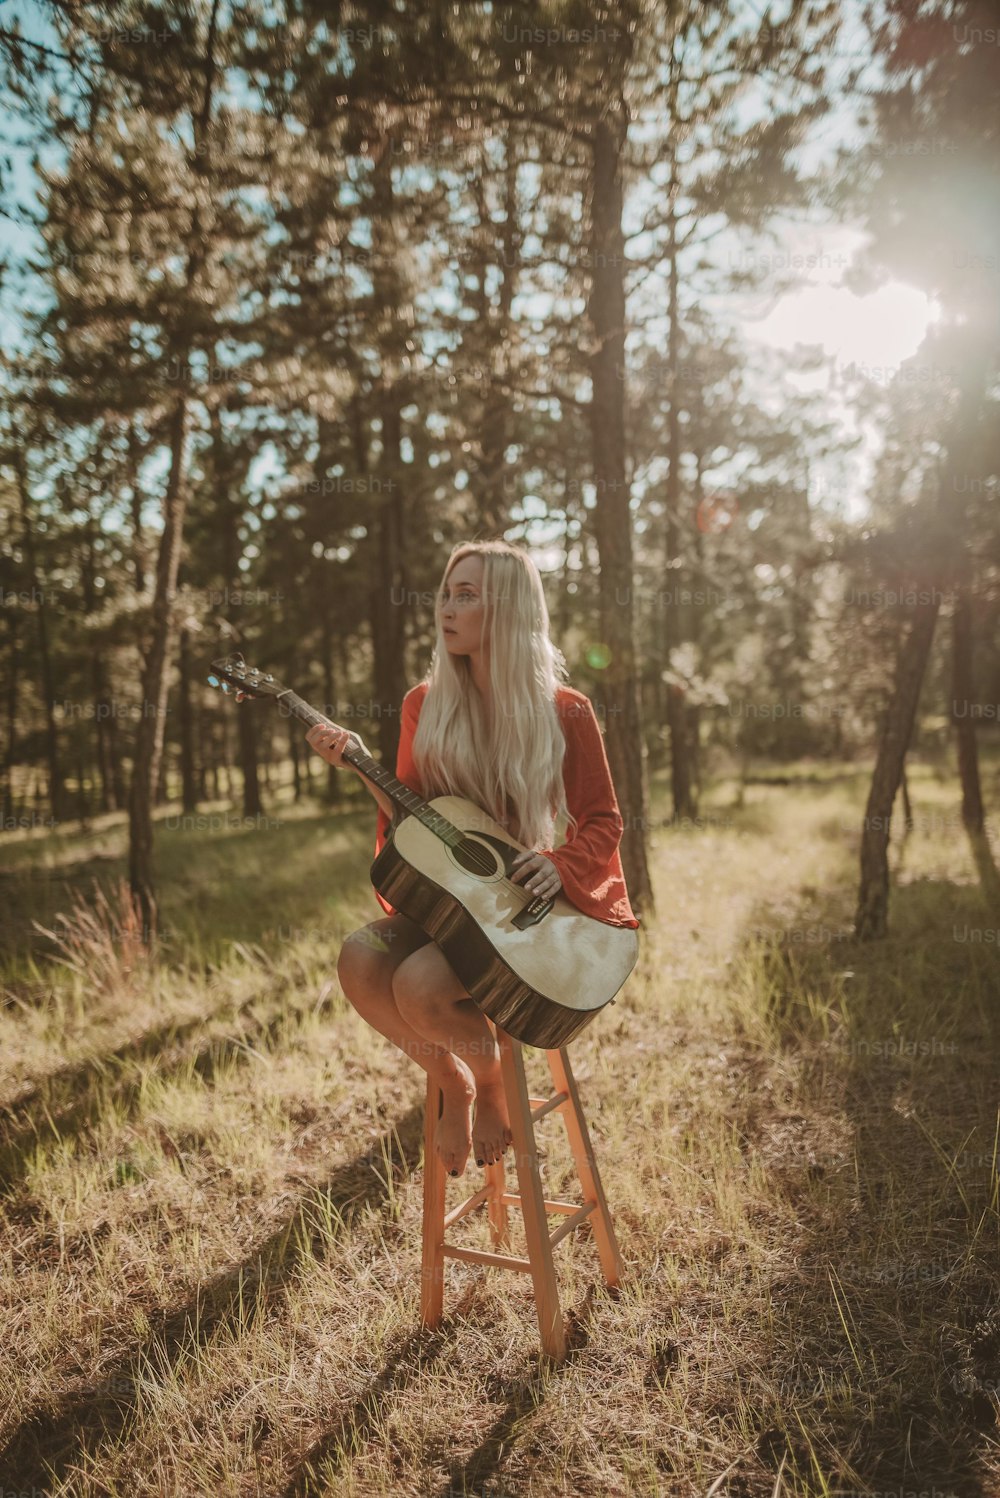 Une femme assise sur un tabouret jouant de la guitare